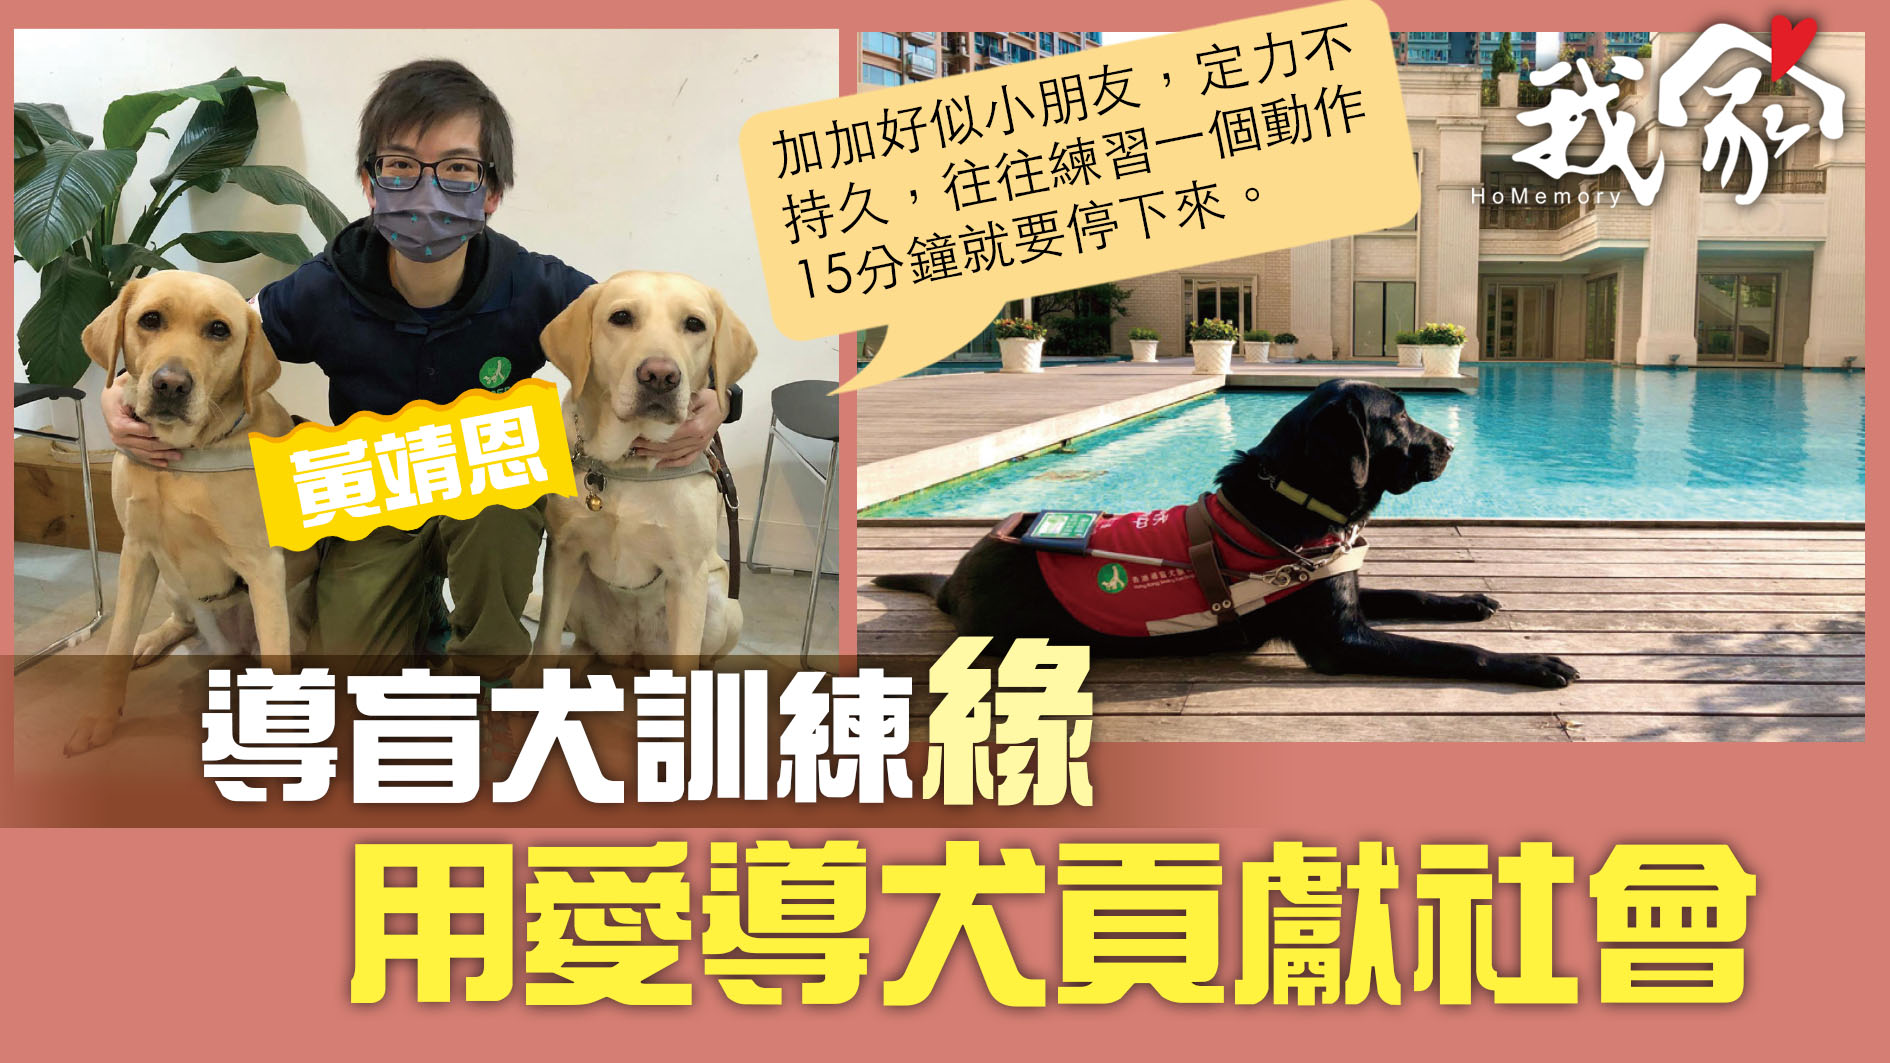 (大埔北區)導盲犬訓練緣  用愛導犬貢獻社會